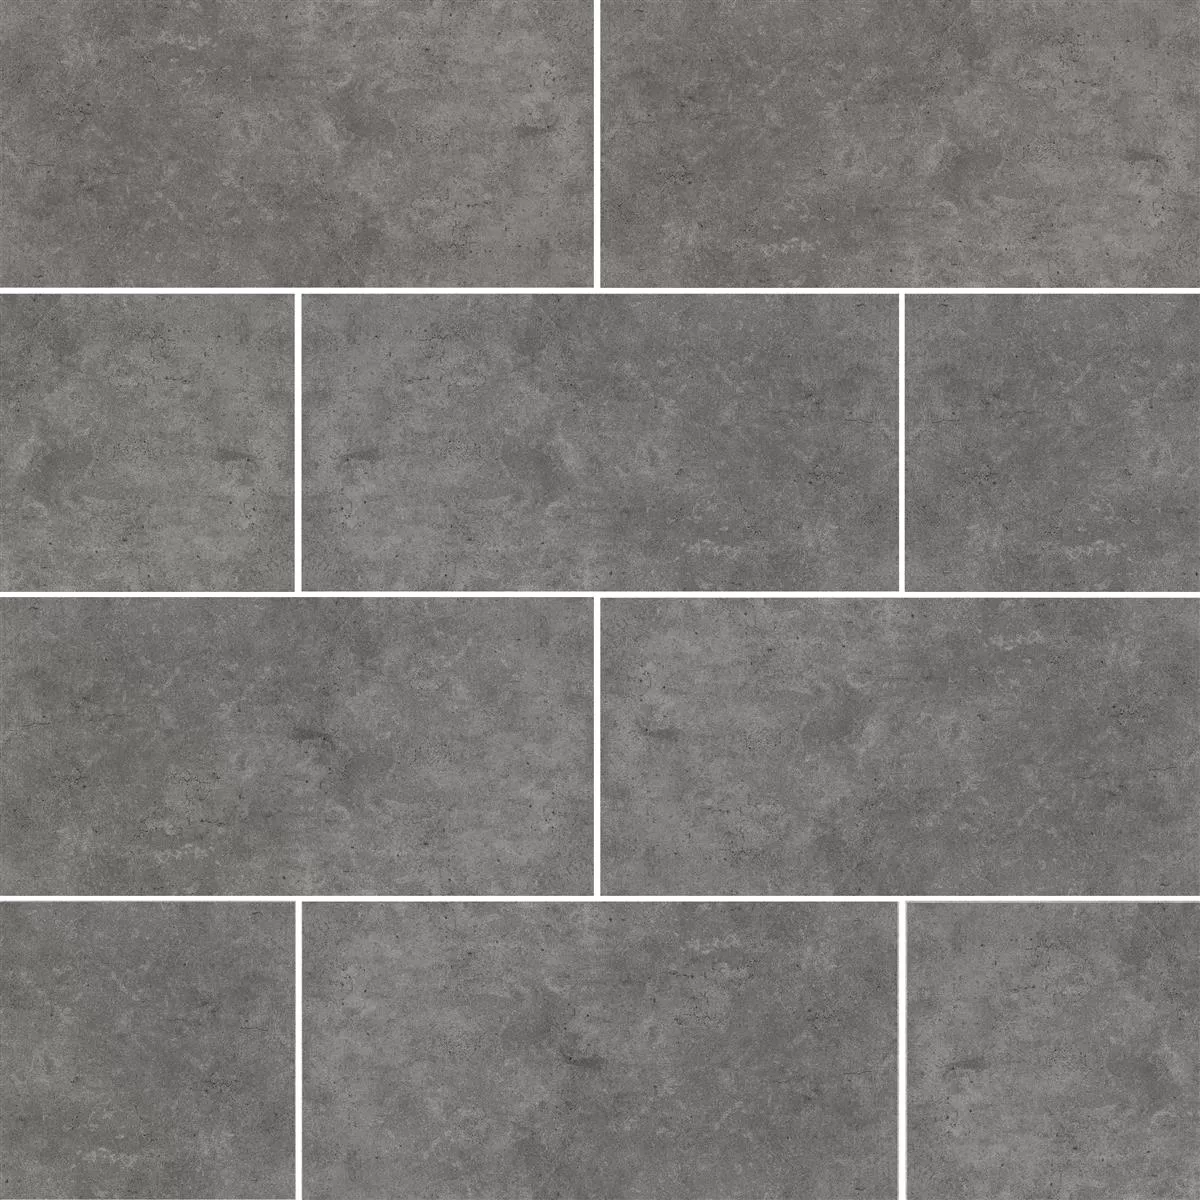 Sample Floor Tiles Jamaica Beton Optic Anthracite 30x60cm